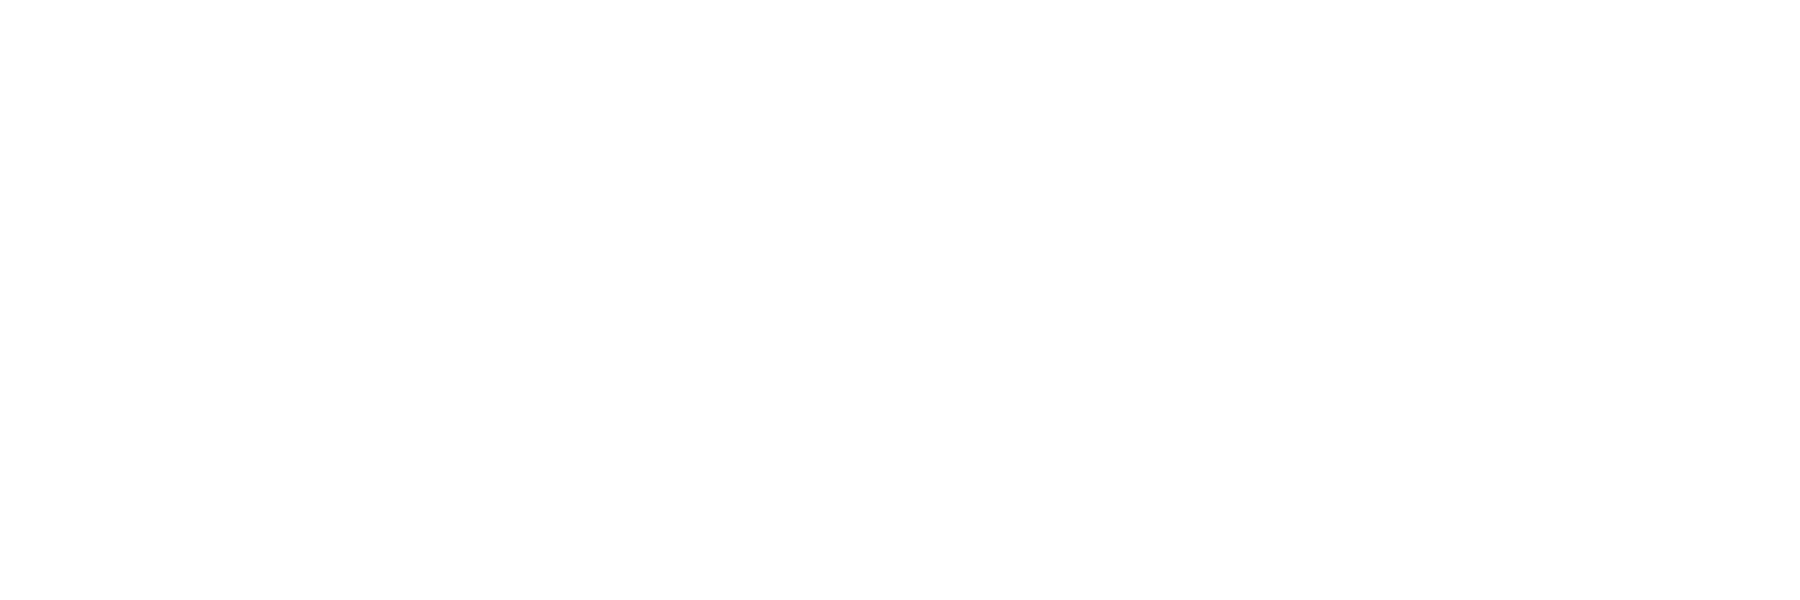 Tweekit Logo